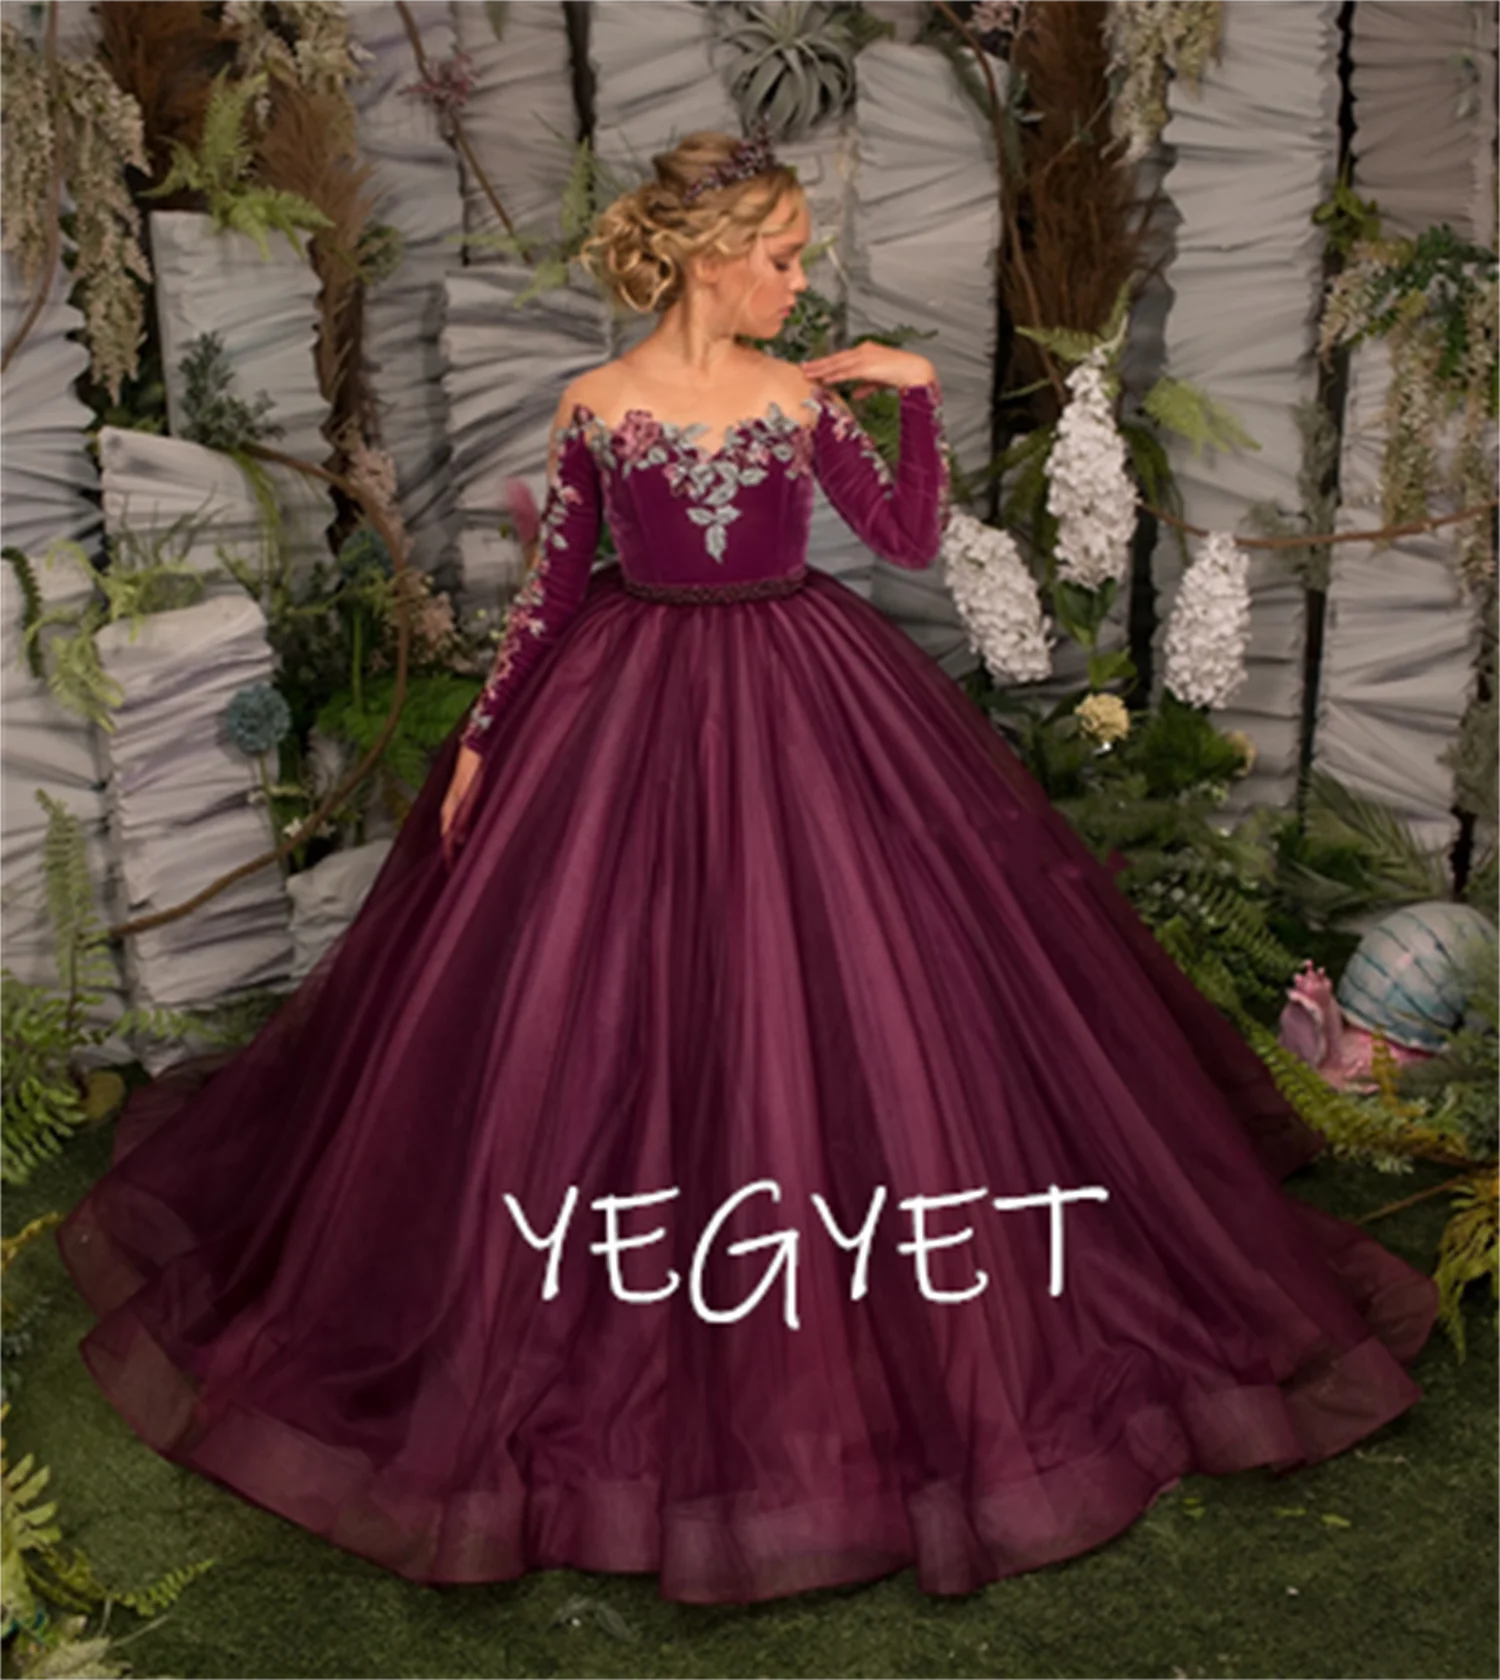 

Burgundy Tulle Velvet Flower Girl Dresses Long Sleeve Princess Girl Wedding Party Gown First Communion Dress Girl Size 1-16Y